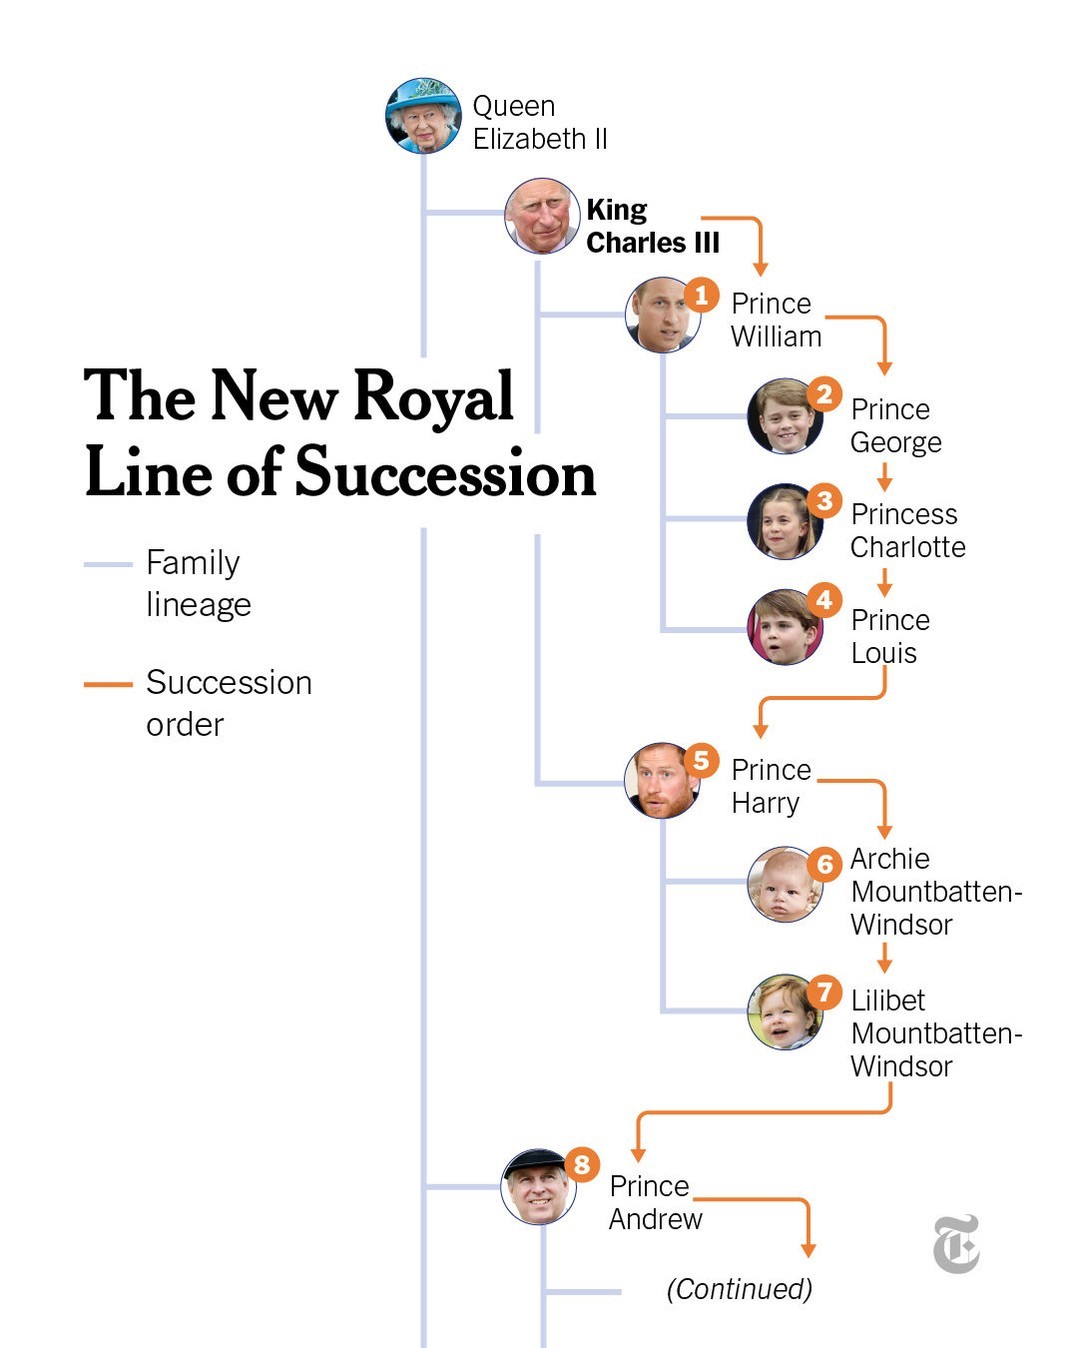 Com a chegada de Carlos III ao trono, quem são os próximos na linha de sucessão?